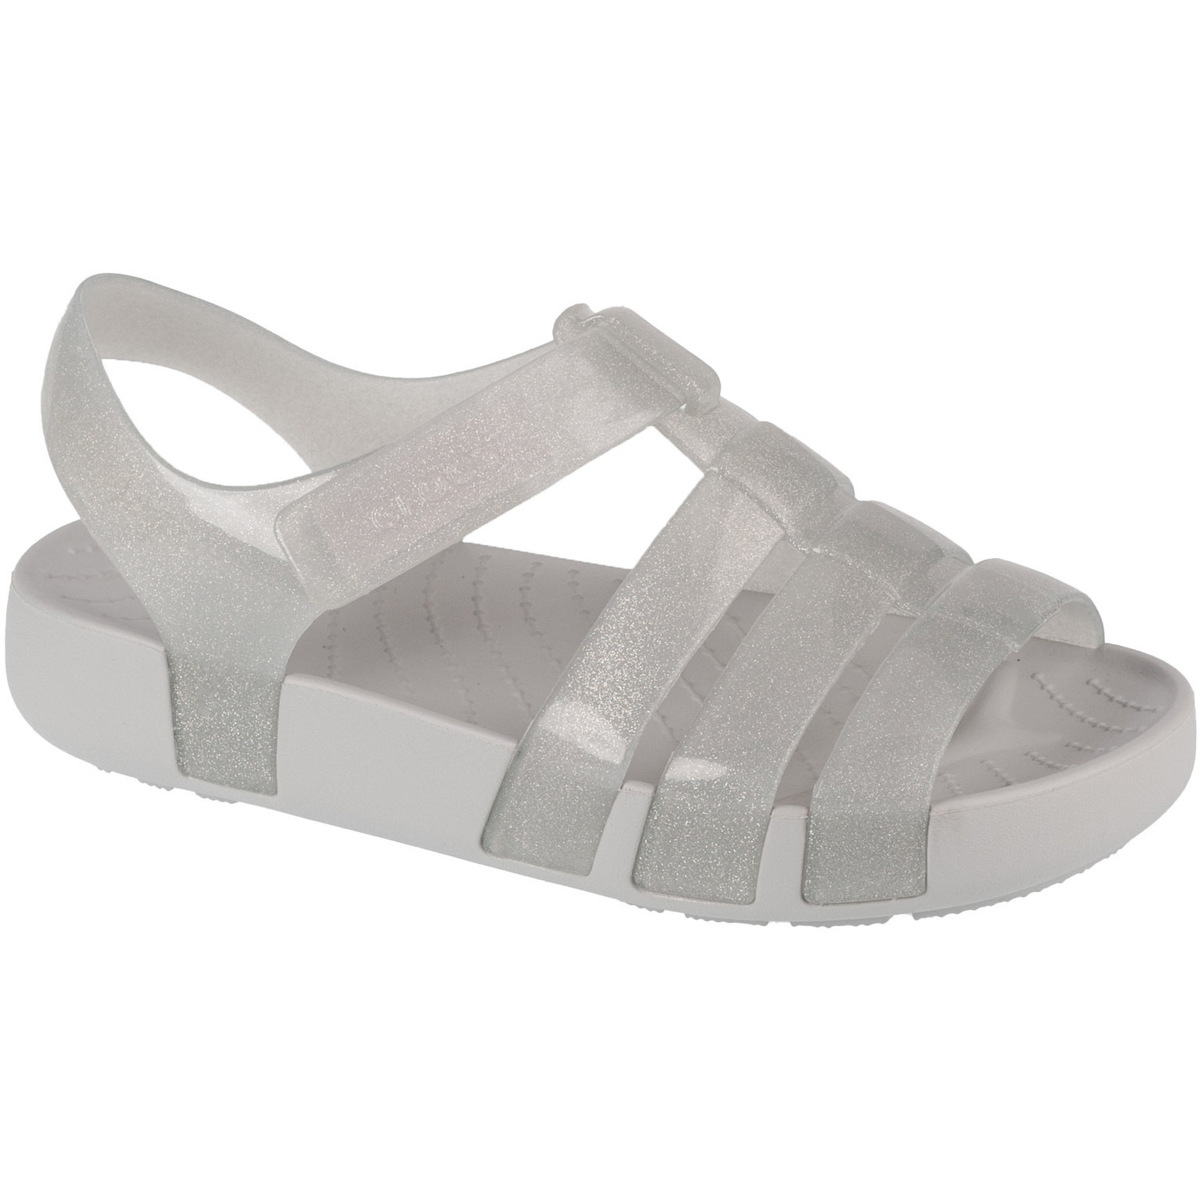 Pantofi Fete Sandale sport Crocs Isabella Glitter Kids Sandal Gri